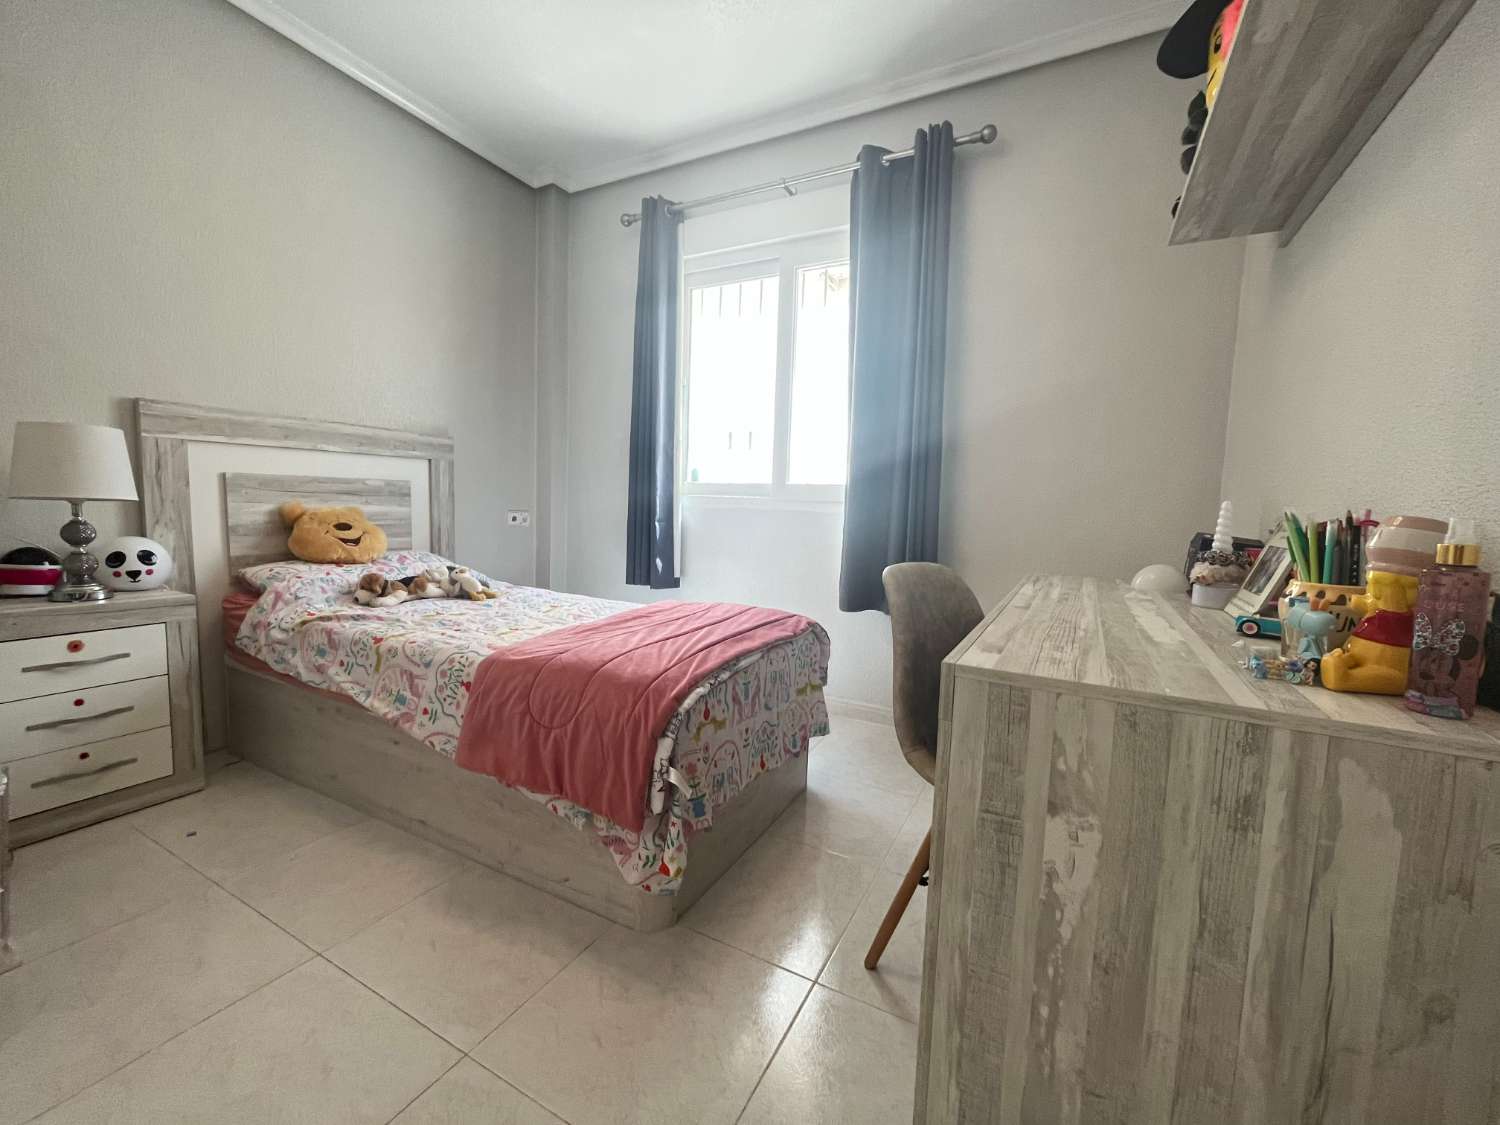 Preciosa villa de 3 dormitorios y 2 baños con jacuzzi en Playa Flamenca.